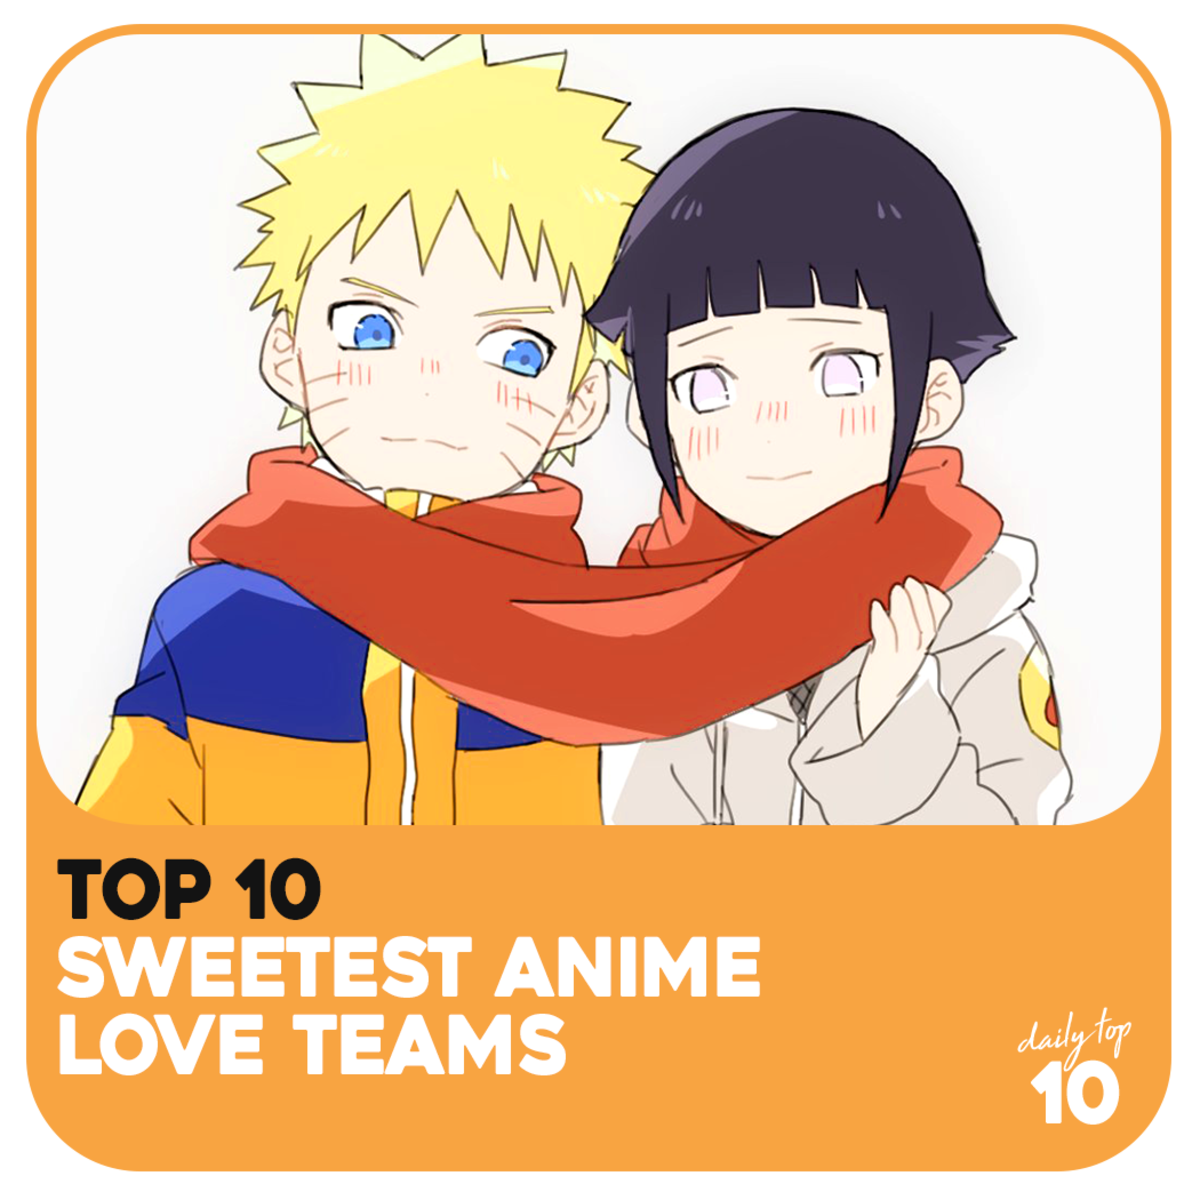 Top 10 Sweetest Anime Love Teams - ReelRundown